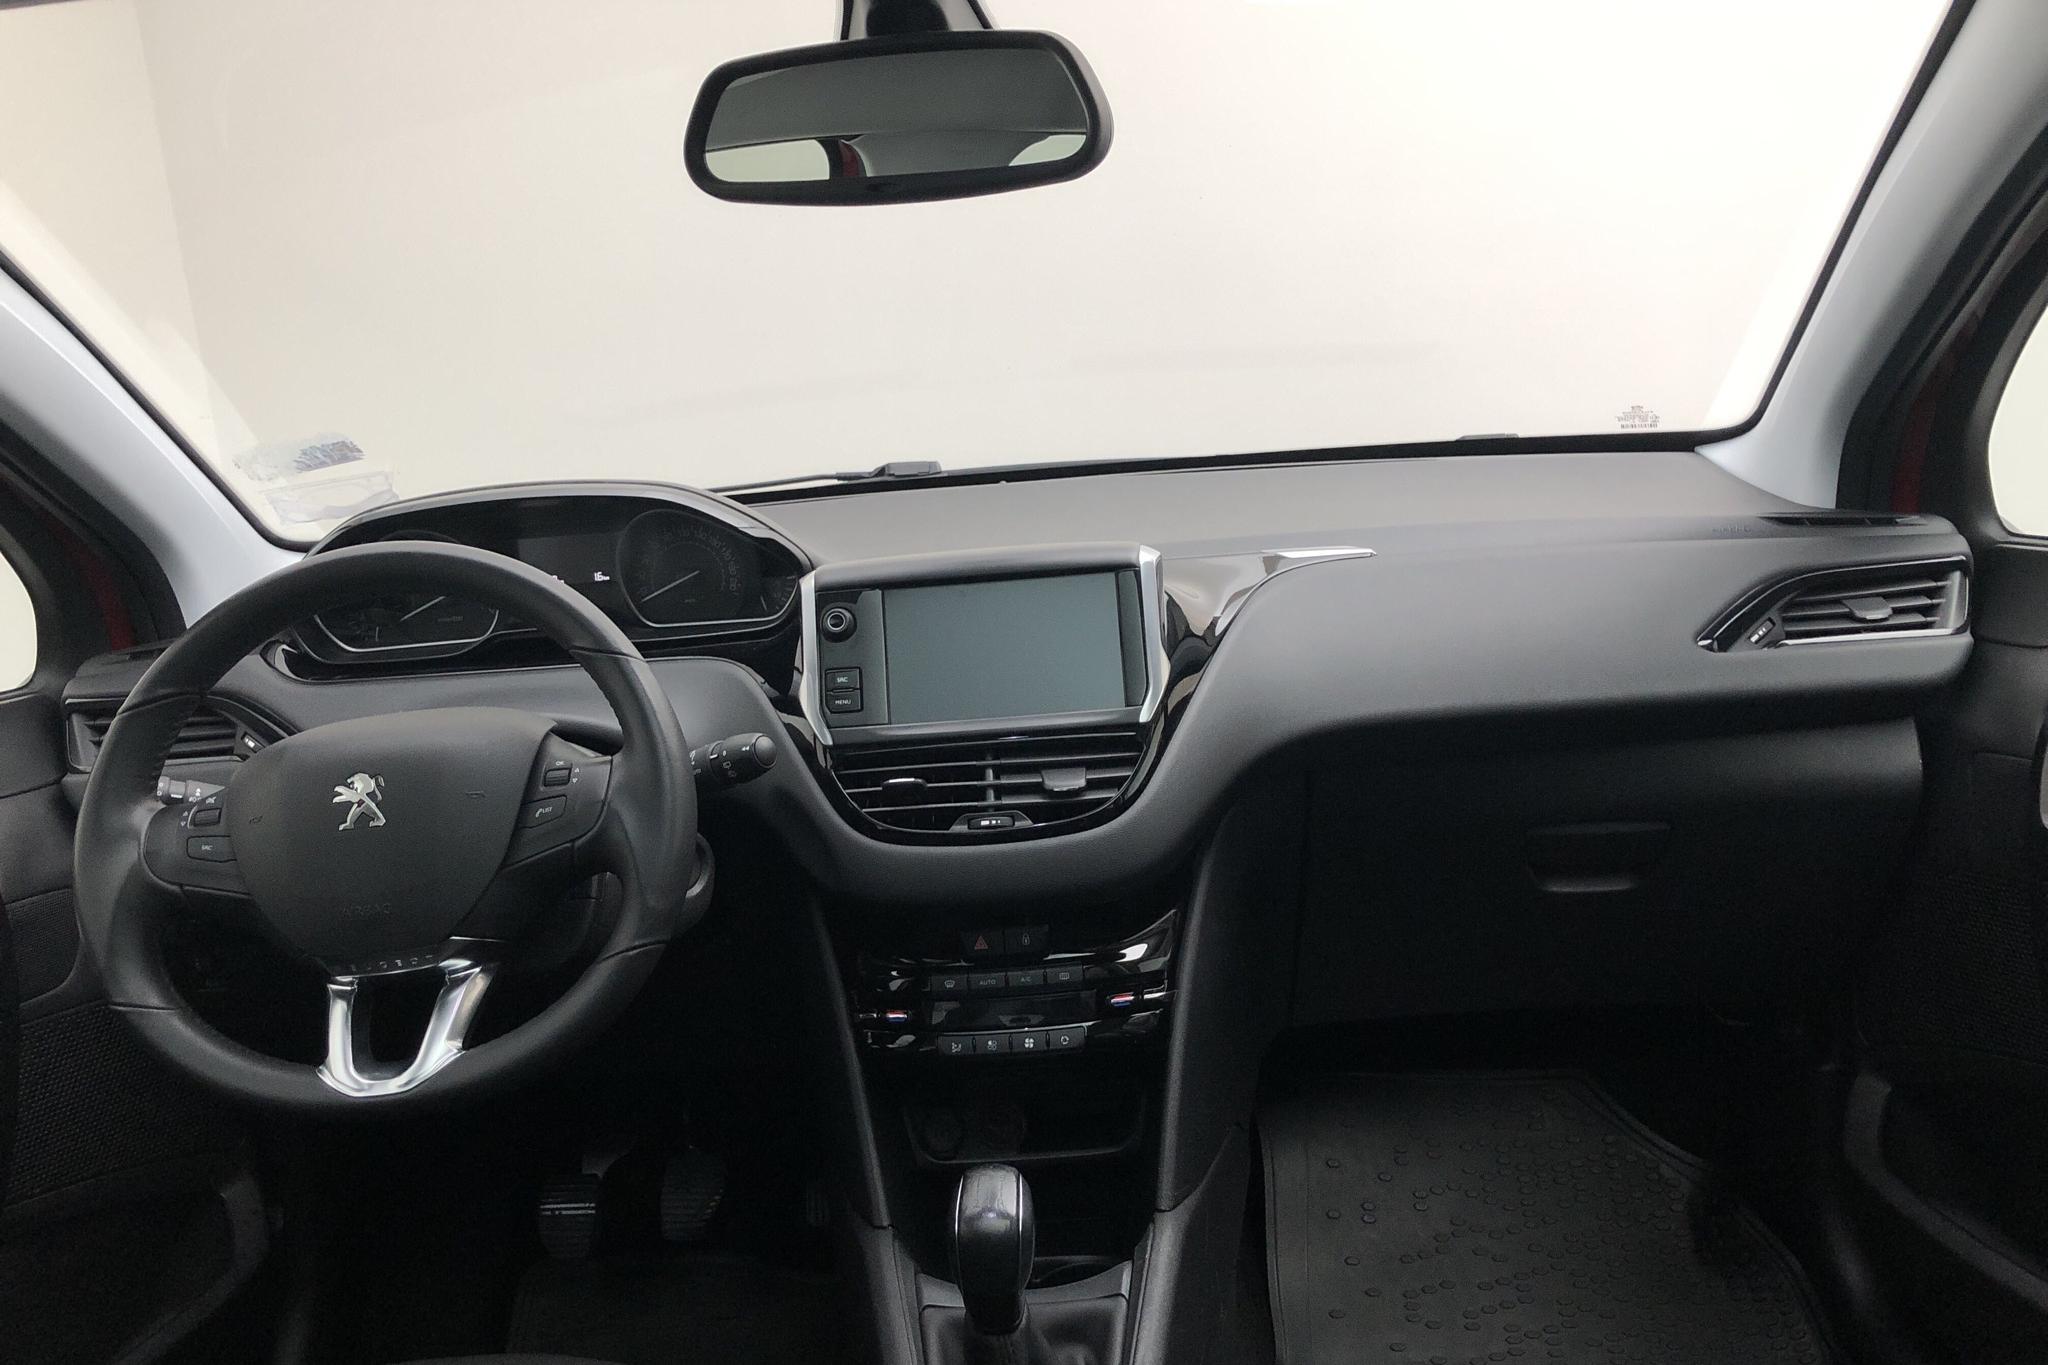 Peugeot 208 PureTech 5dr (82hk) - 6 427 mil - Manuell - 2019